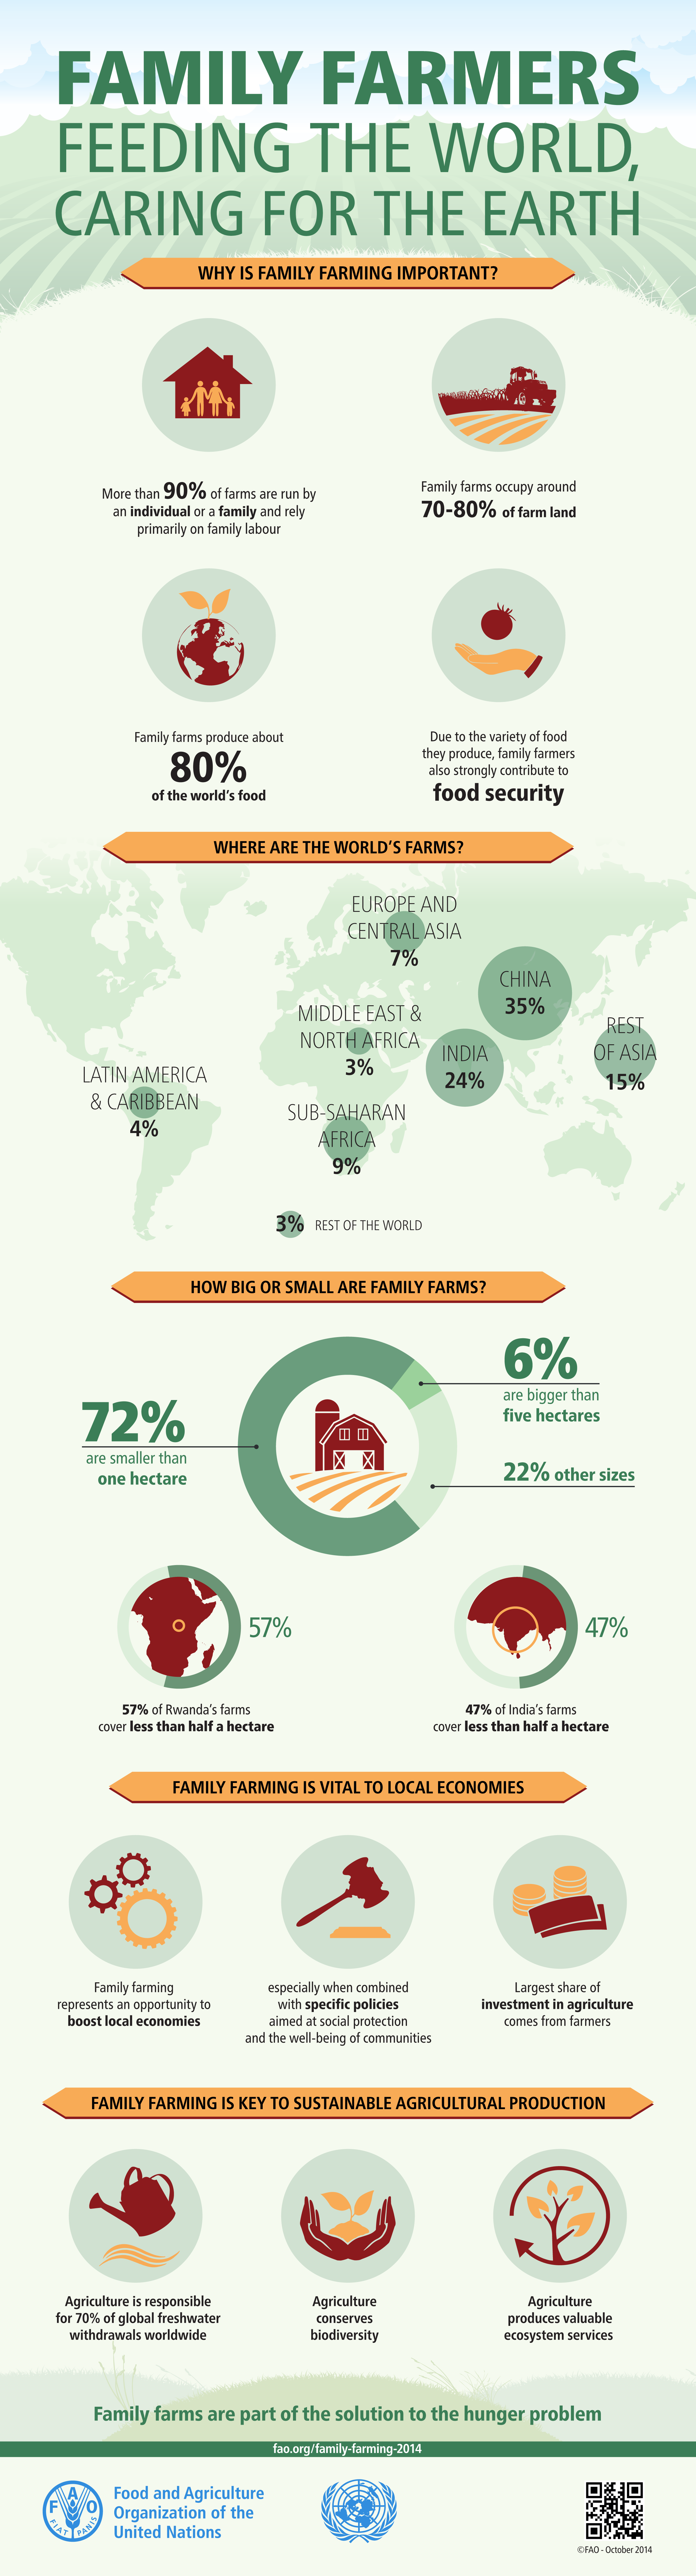 FAO-Infographic-IYFF14-Family-Farms-en1